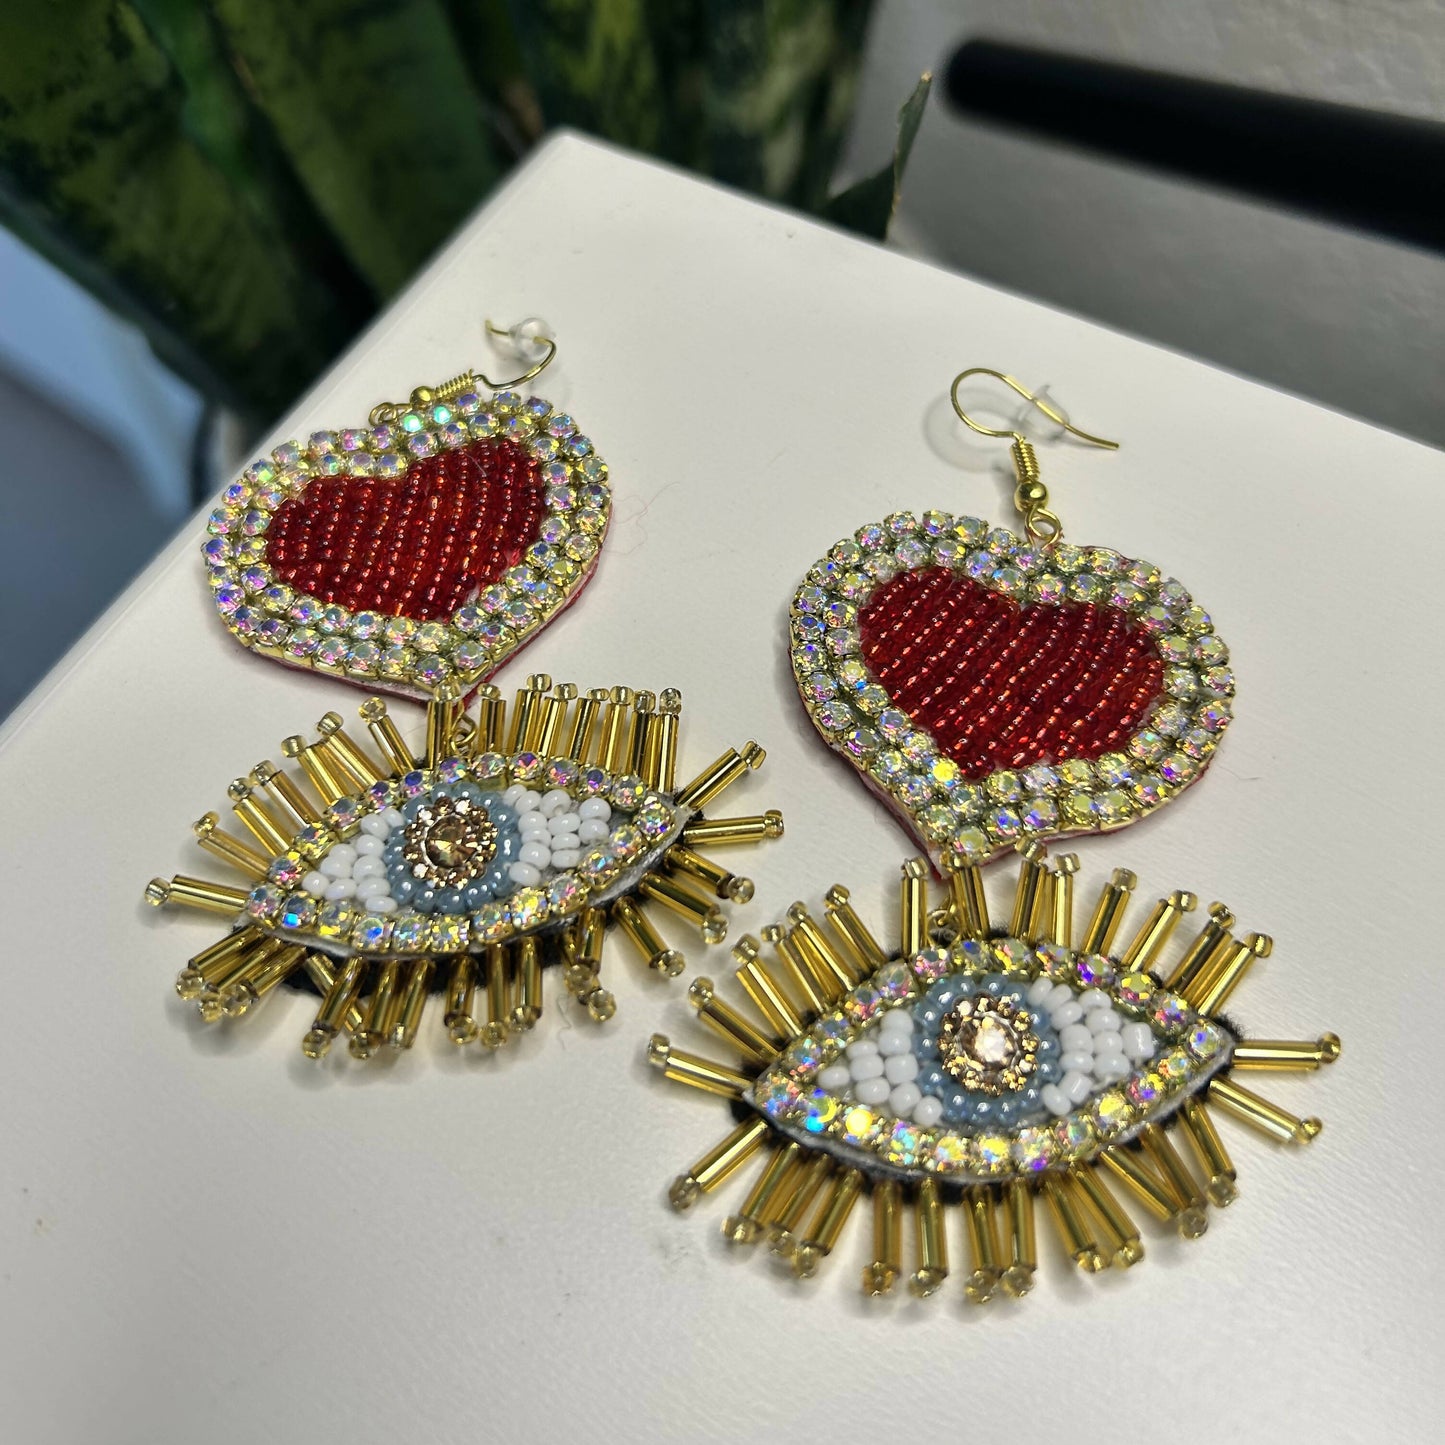 Corazon y Ojo Earrings